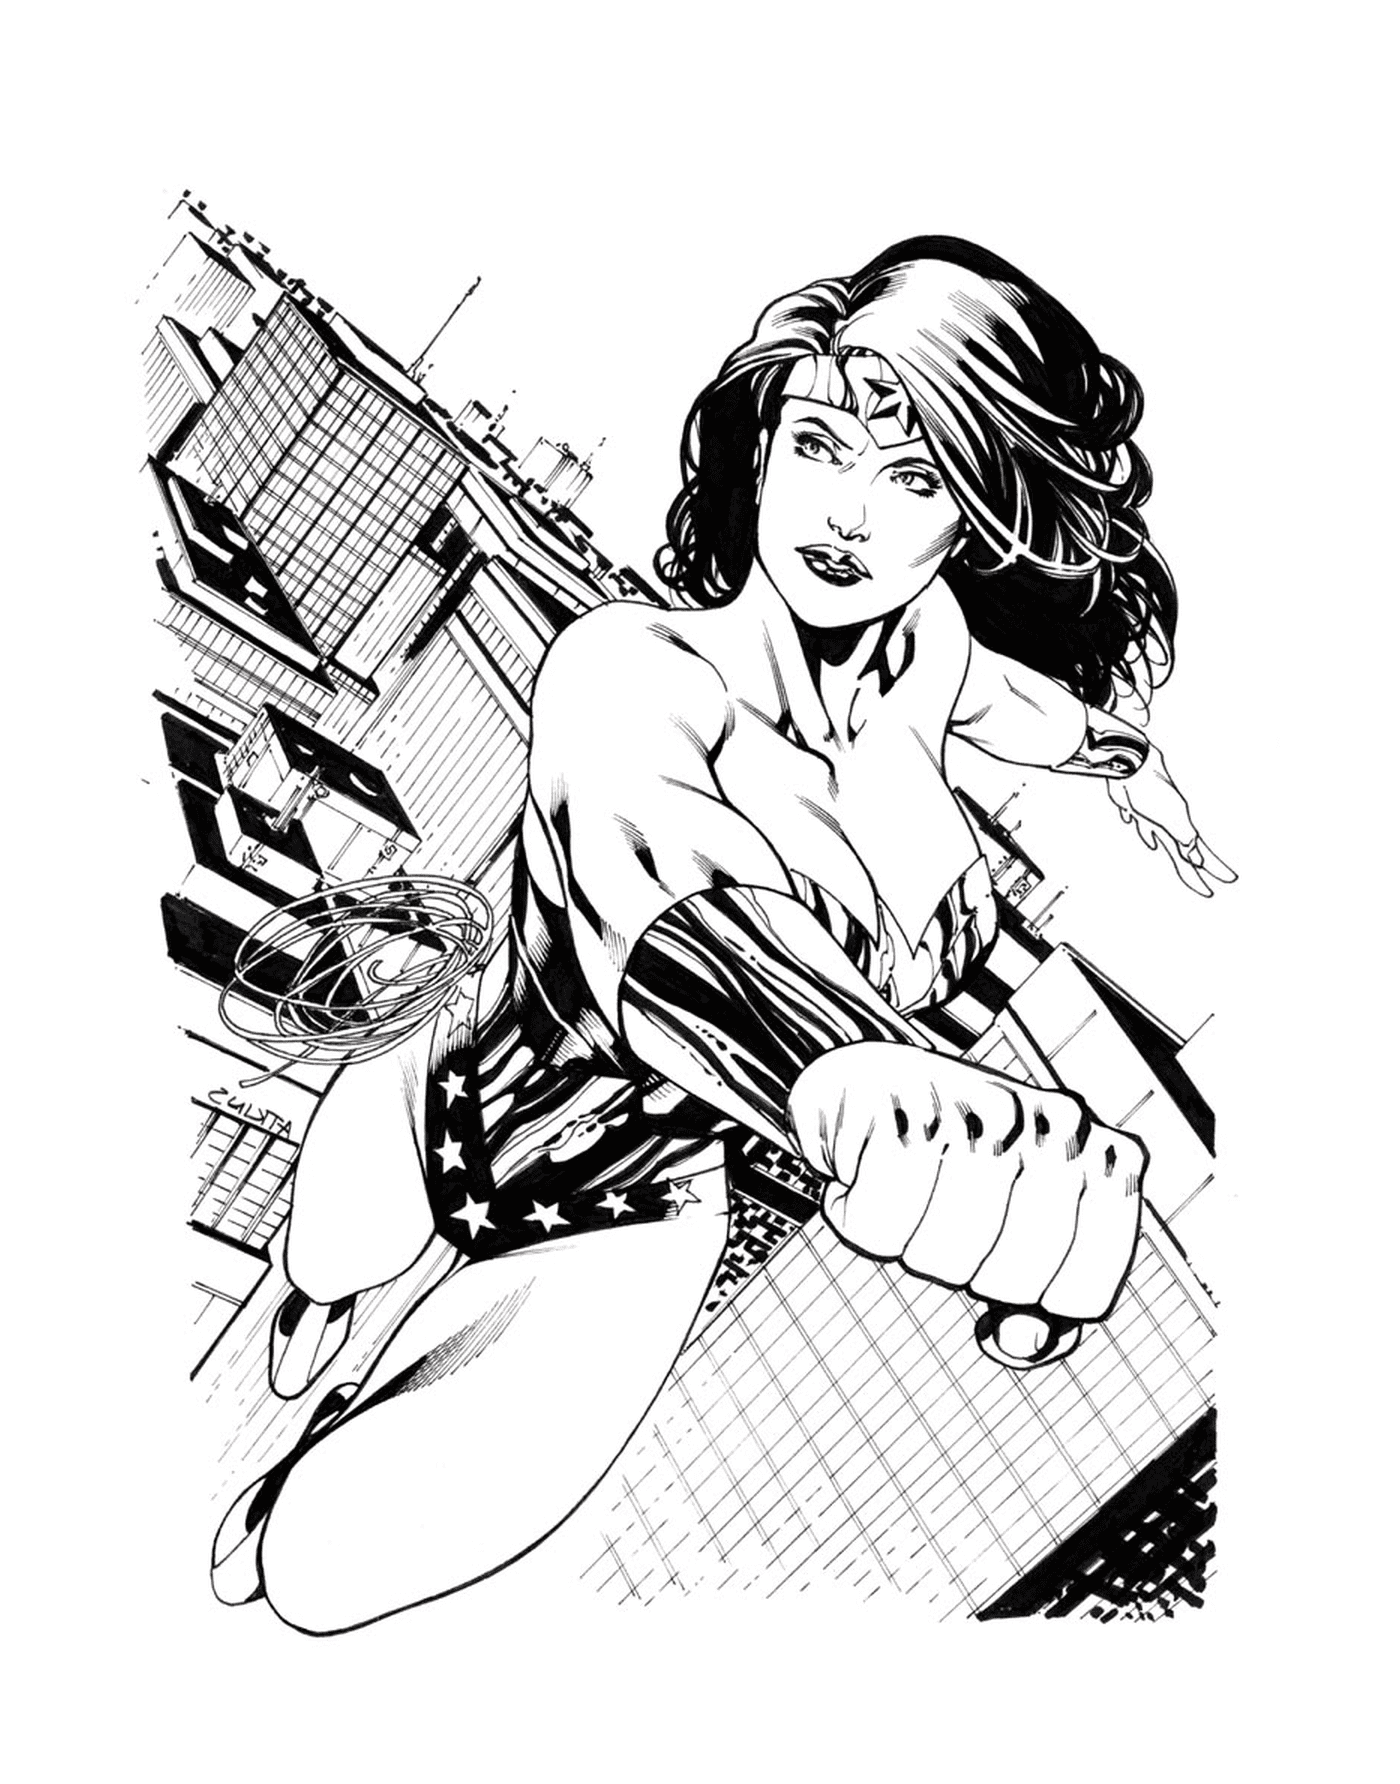  Wonder Woman's Sketch von Ratkins 